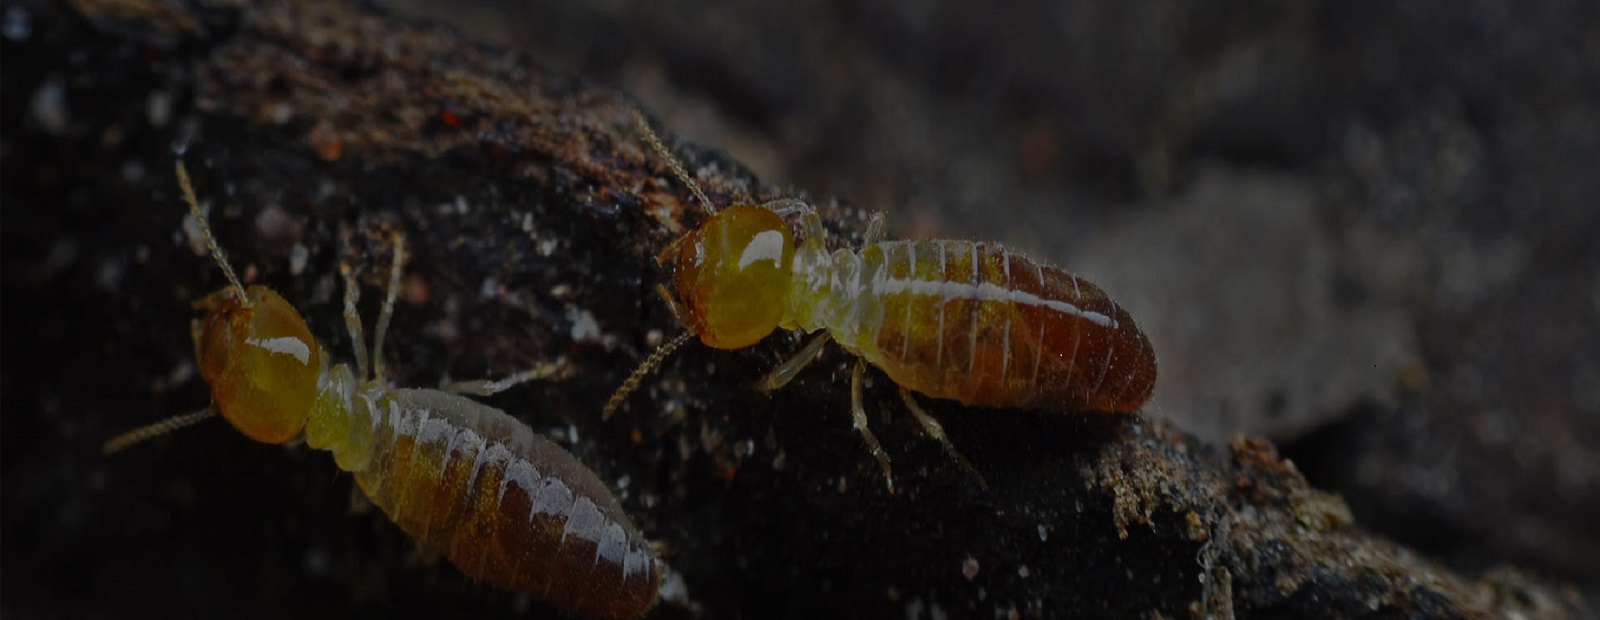 a close up of a termite